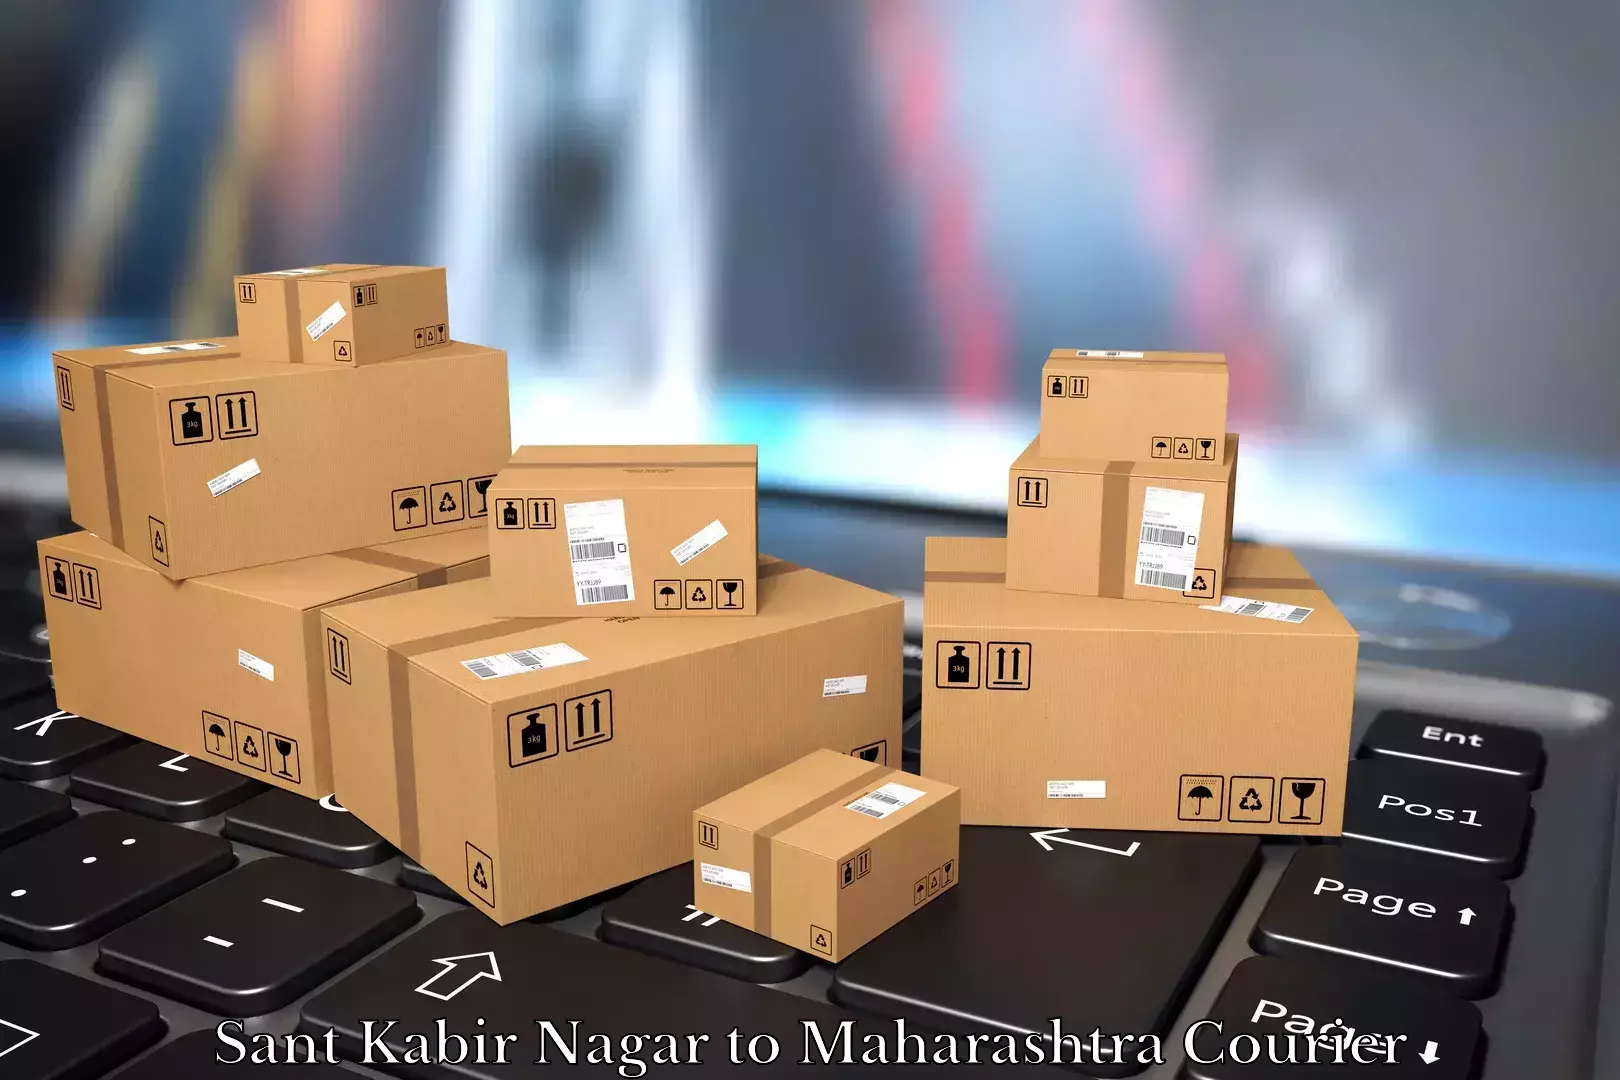 Moving and handling services Sant Kabir Nagar to Maharashtra